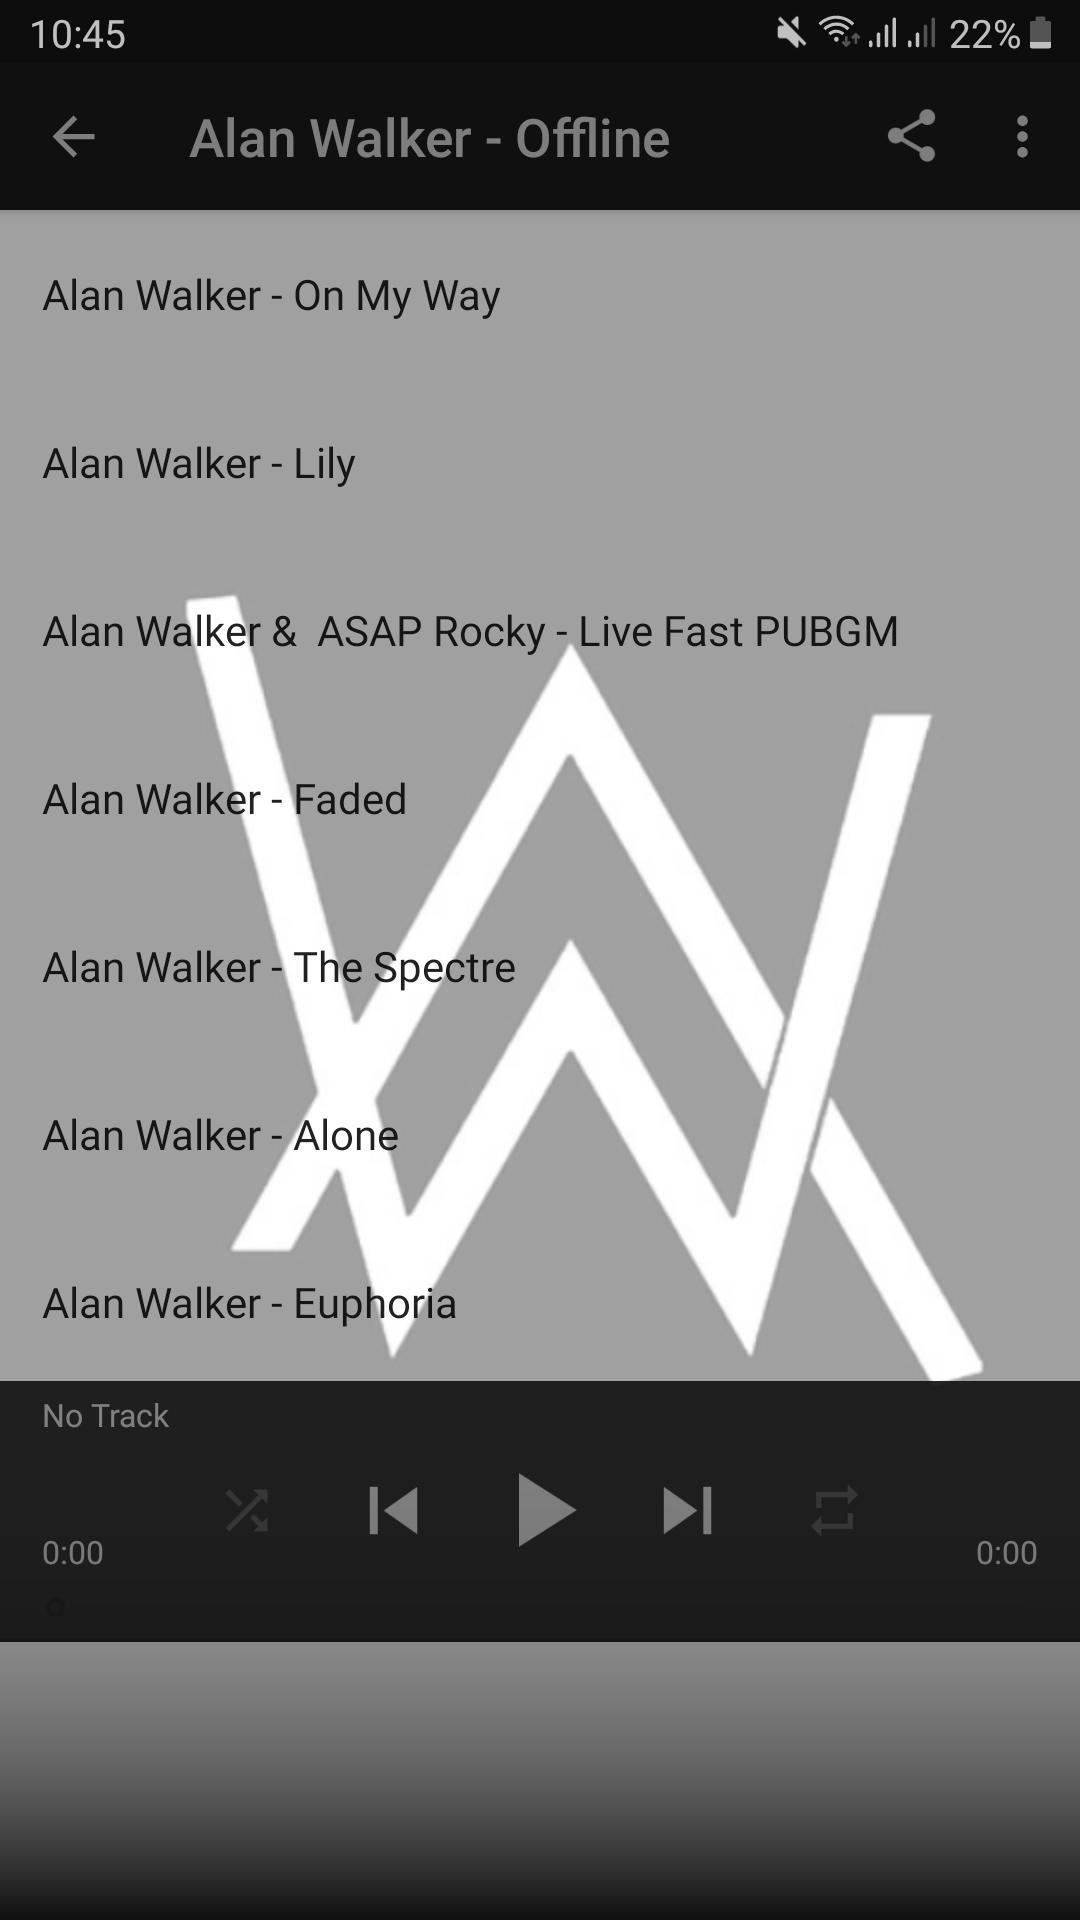 ALAN WALKER OFFLINE for Android - APK Download